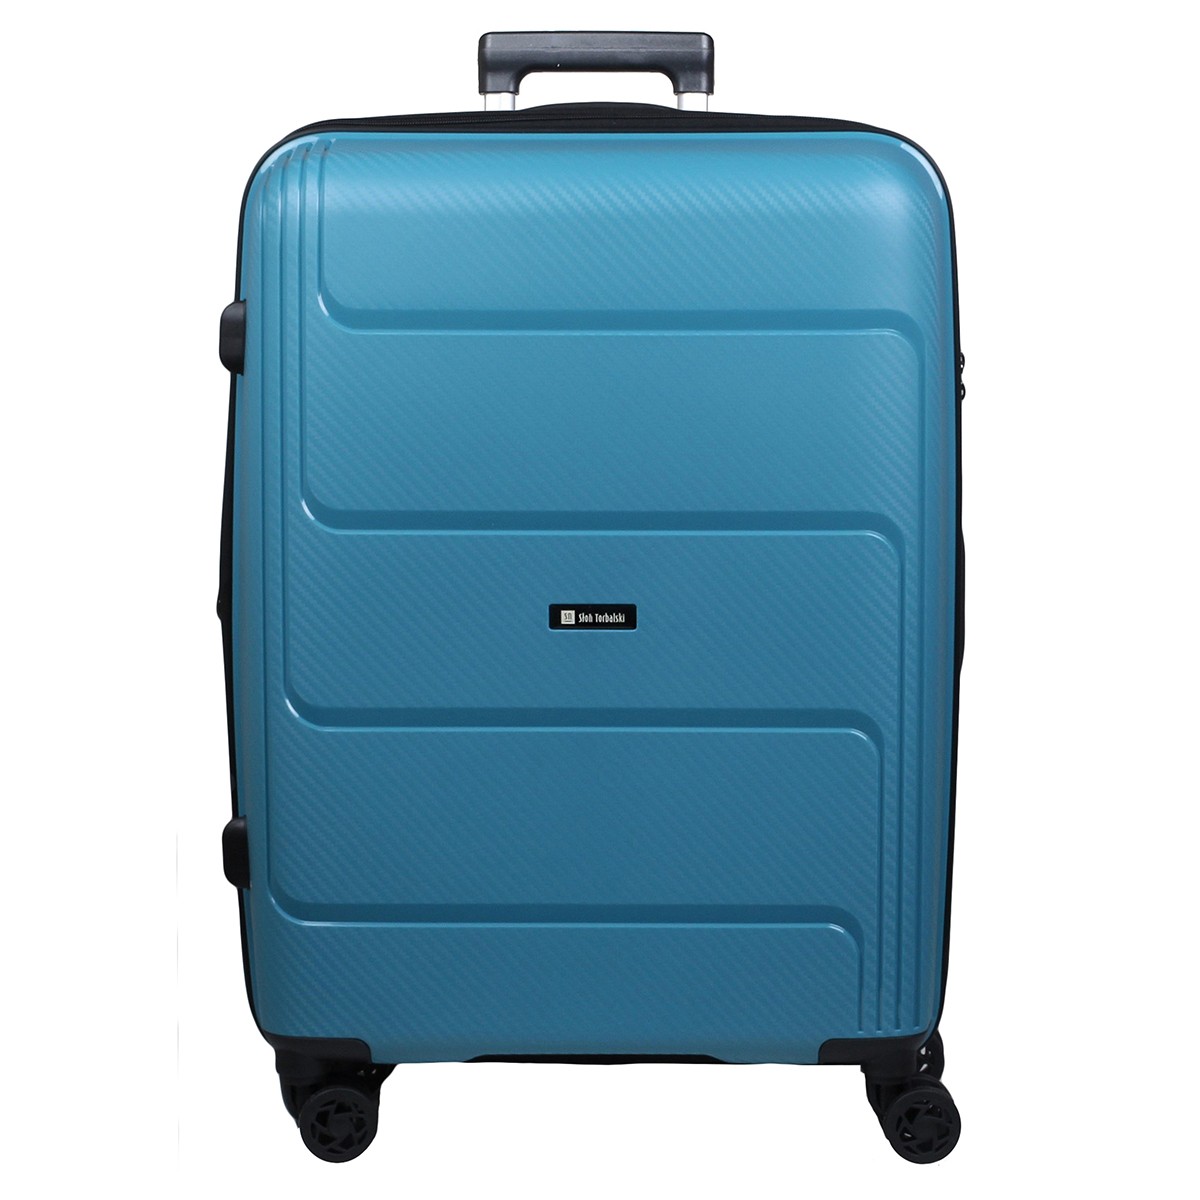 niebieska-walizka-poszerzana-duza-Hard-Class-Brave-polipropylen-04-0211S-73.jpg